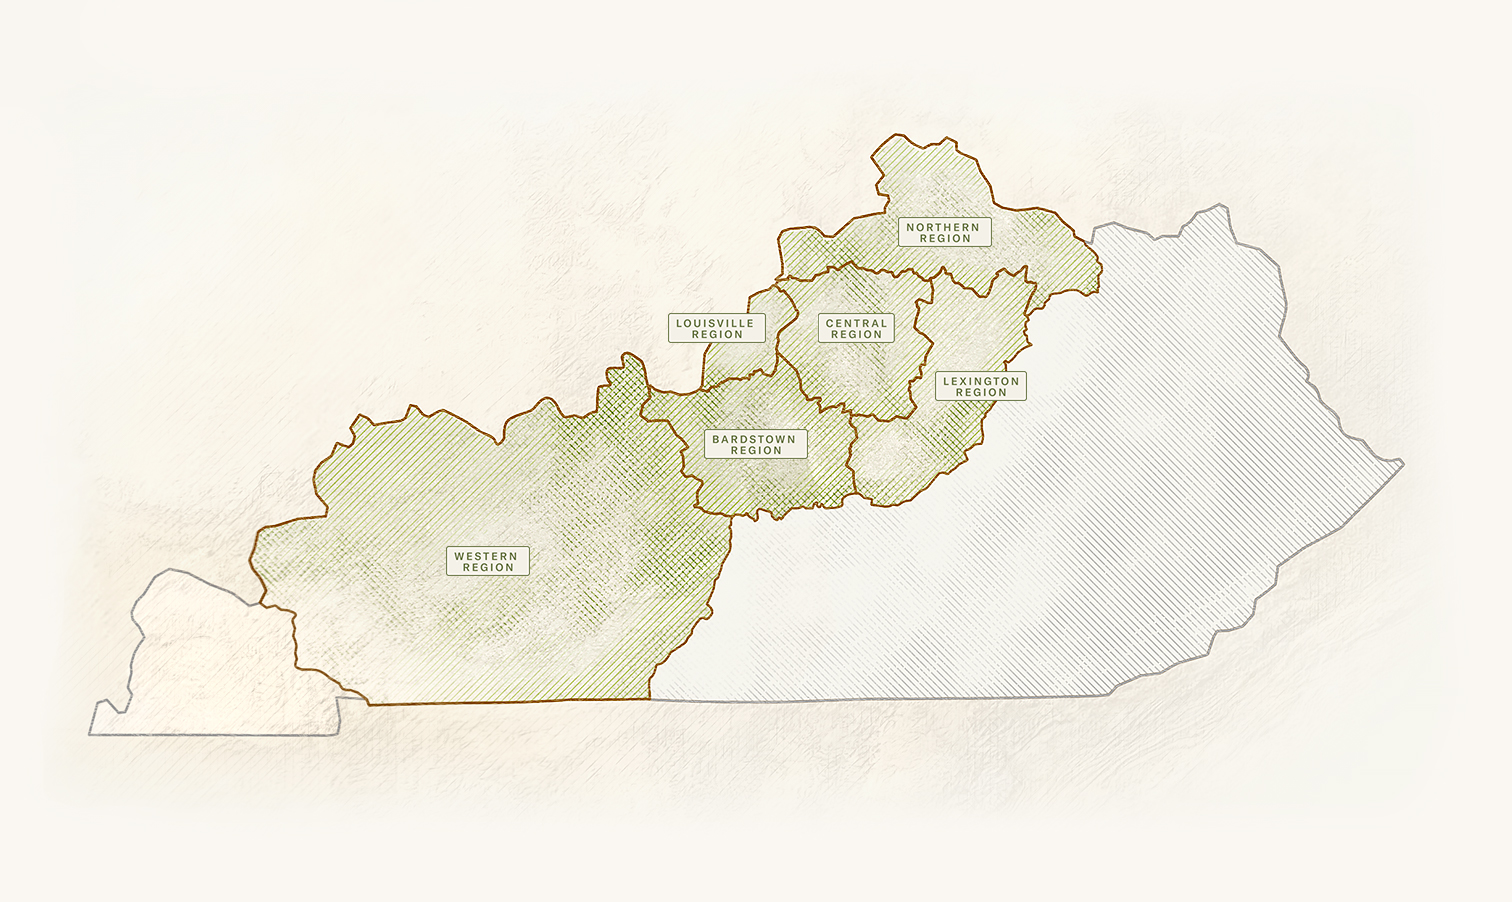 A map of the 6 regions that make up the Kentucky Bourbon Trail®: Western Region, Bardstown Region, Louisville Region, Central Region, Lexington Region, Northern Region